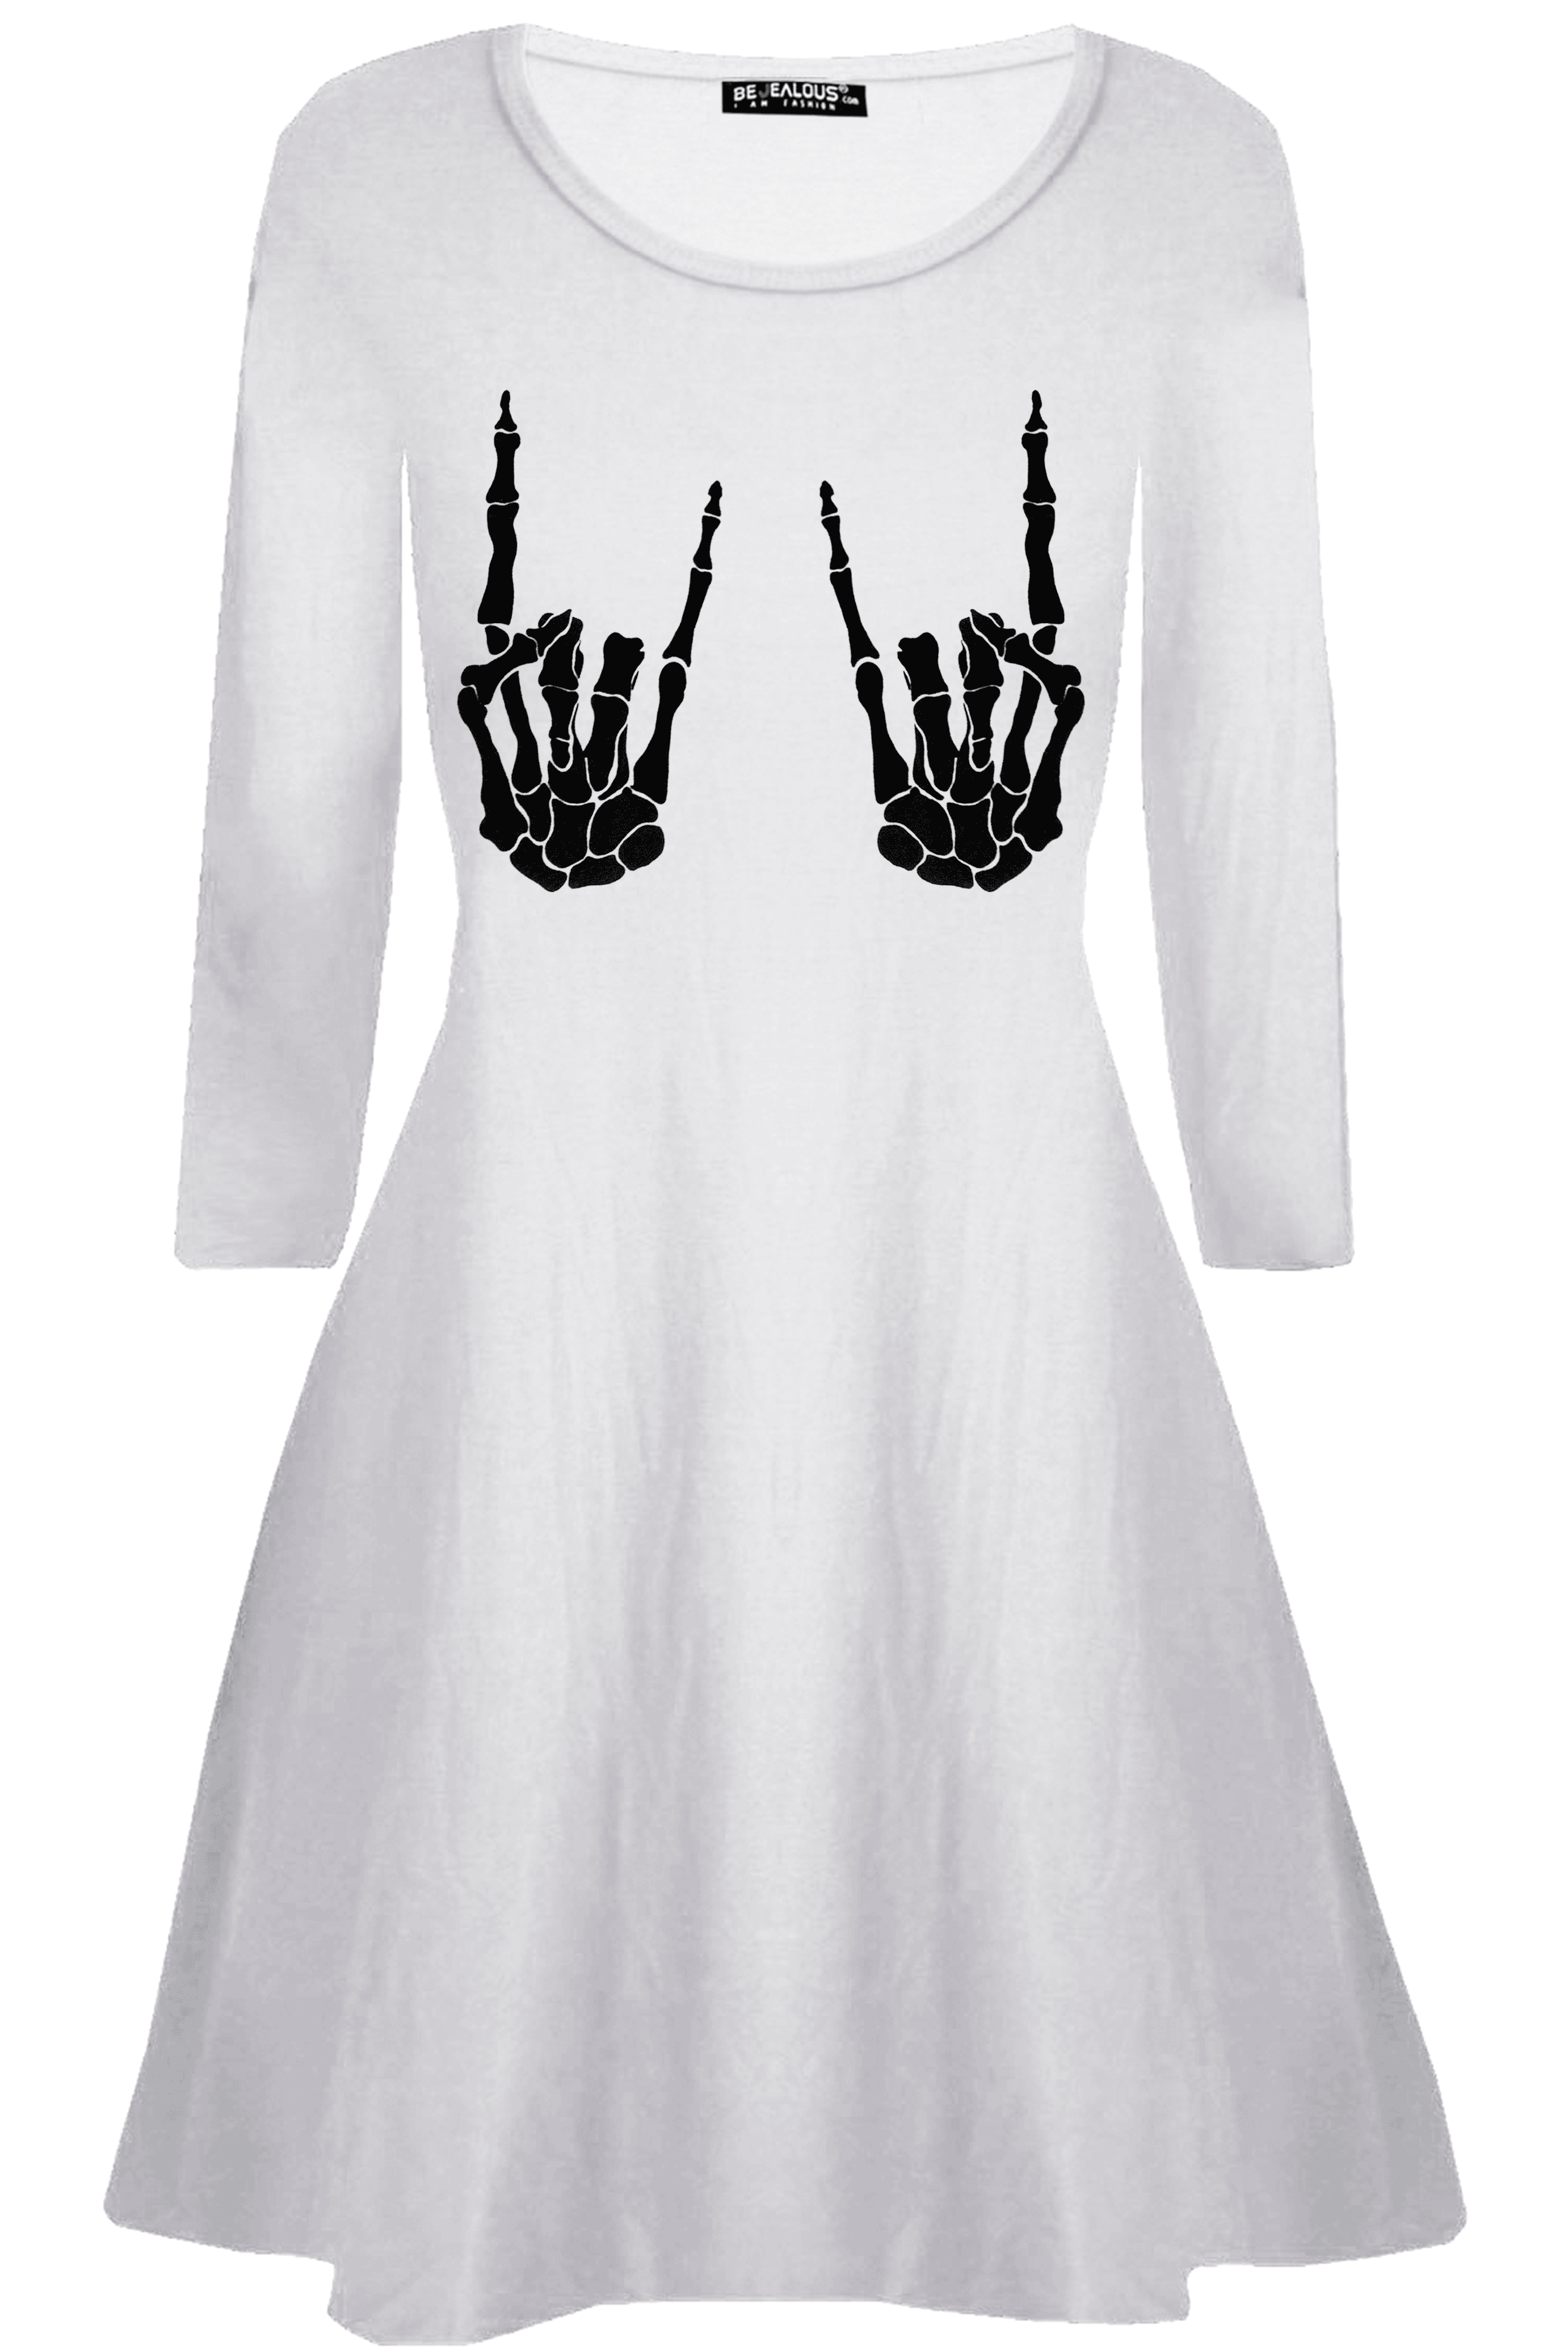 Long Sleeve Skeleton Swing Dress - bejealous-com